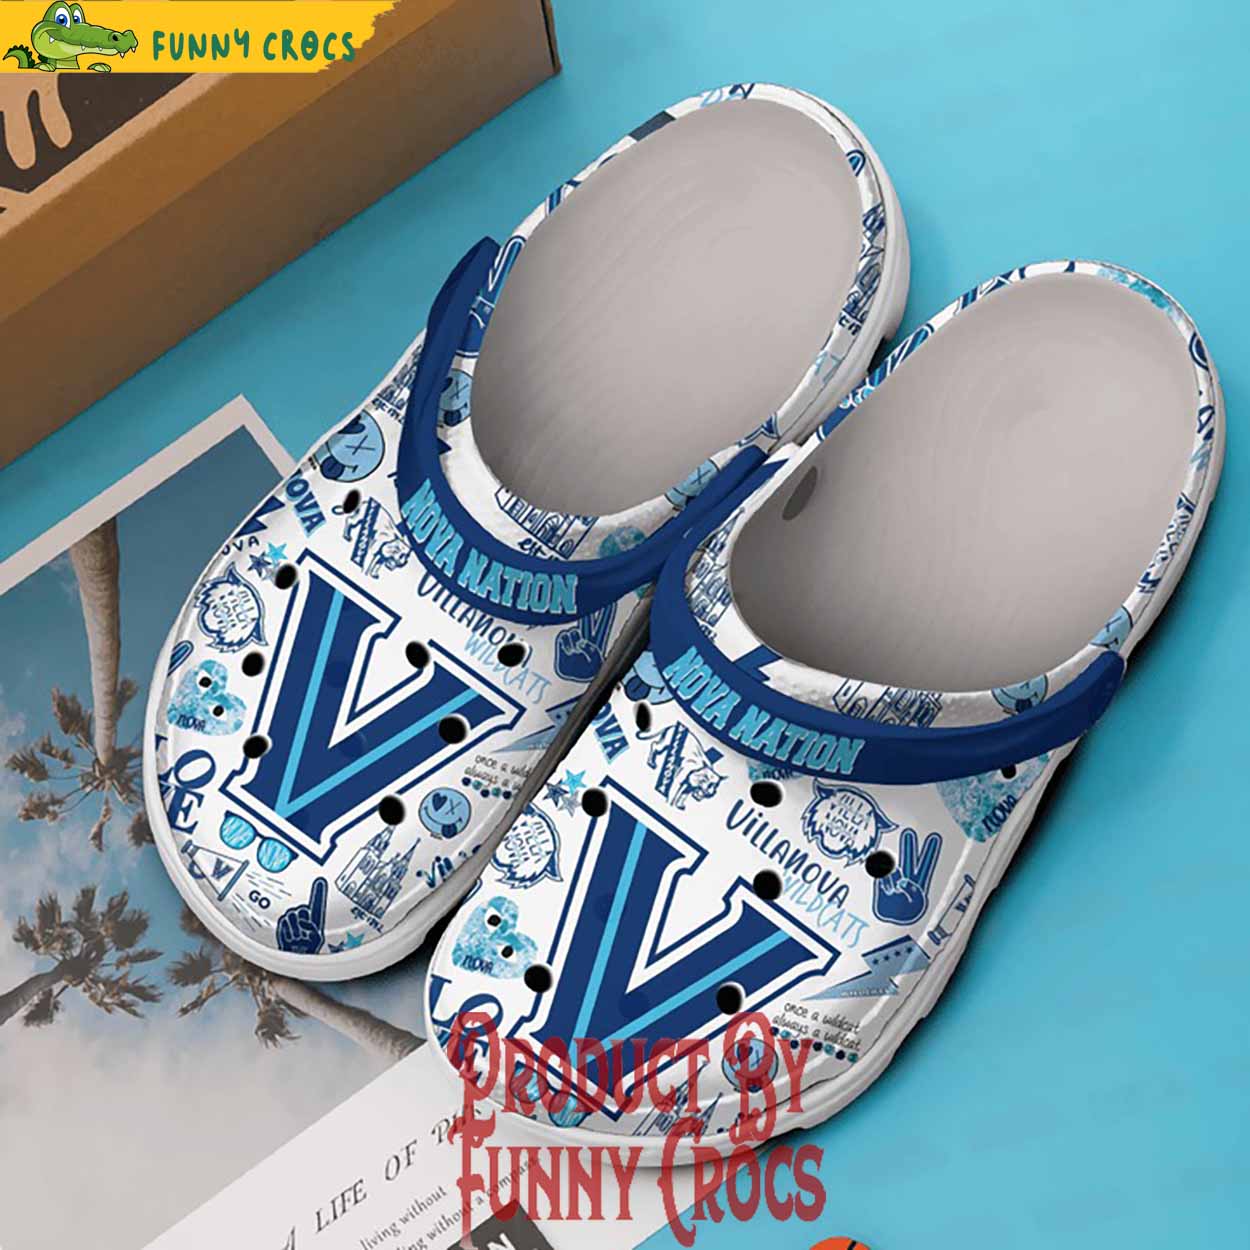 Villanova Wildcats Nova Nation Crocs Shoes